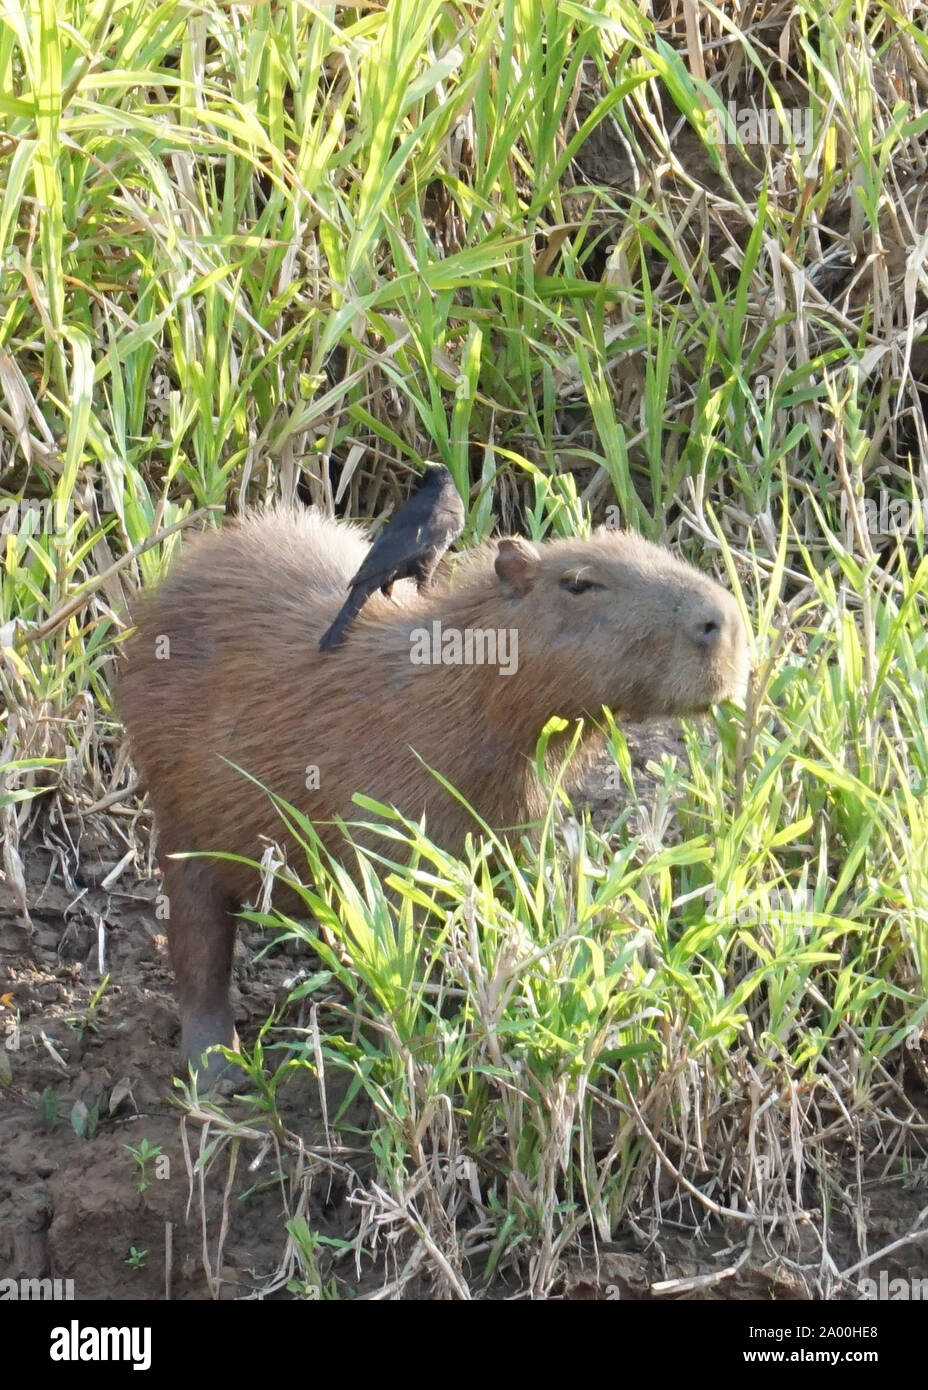 Il capibara (Hydrochoerus hydrochaeris) è un mammifero originario del Sud America. È il più grande roditore vivente nel mondo. Chiamato anche chigüire, chigüiro e carpincho, si tratta di un animale selvatico fotografato sulle rive del fiume Amazon. Foto Stock